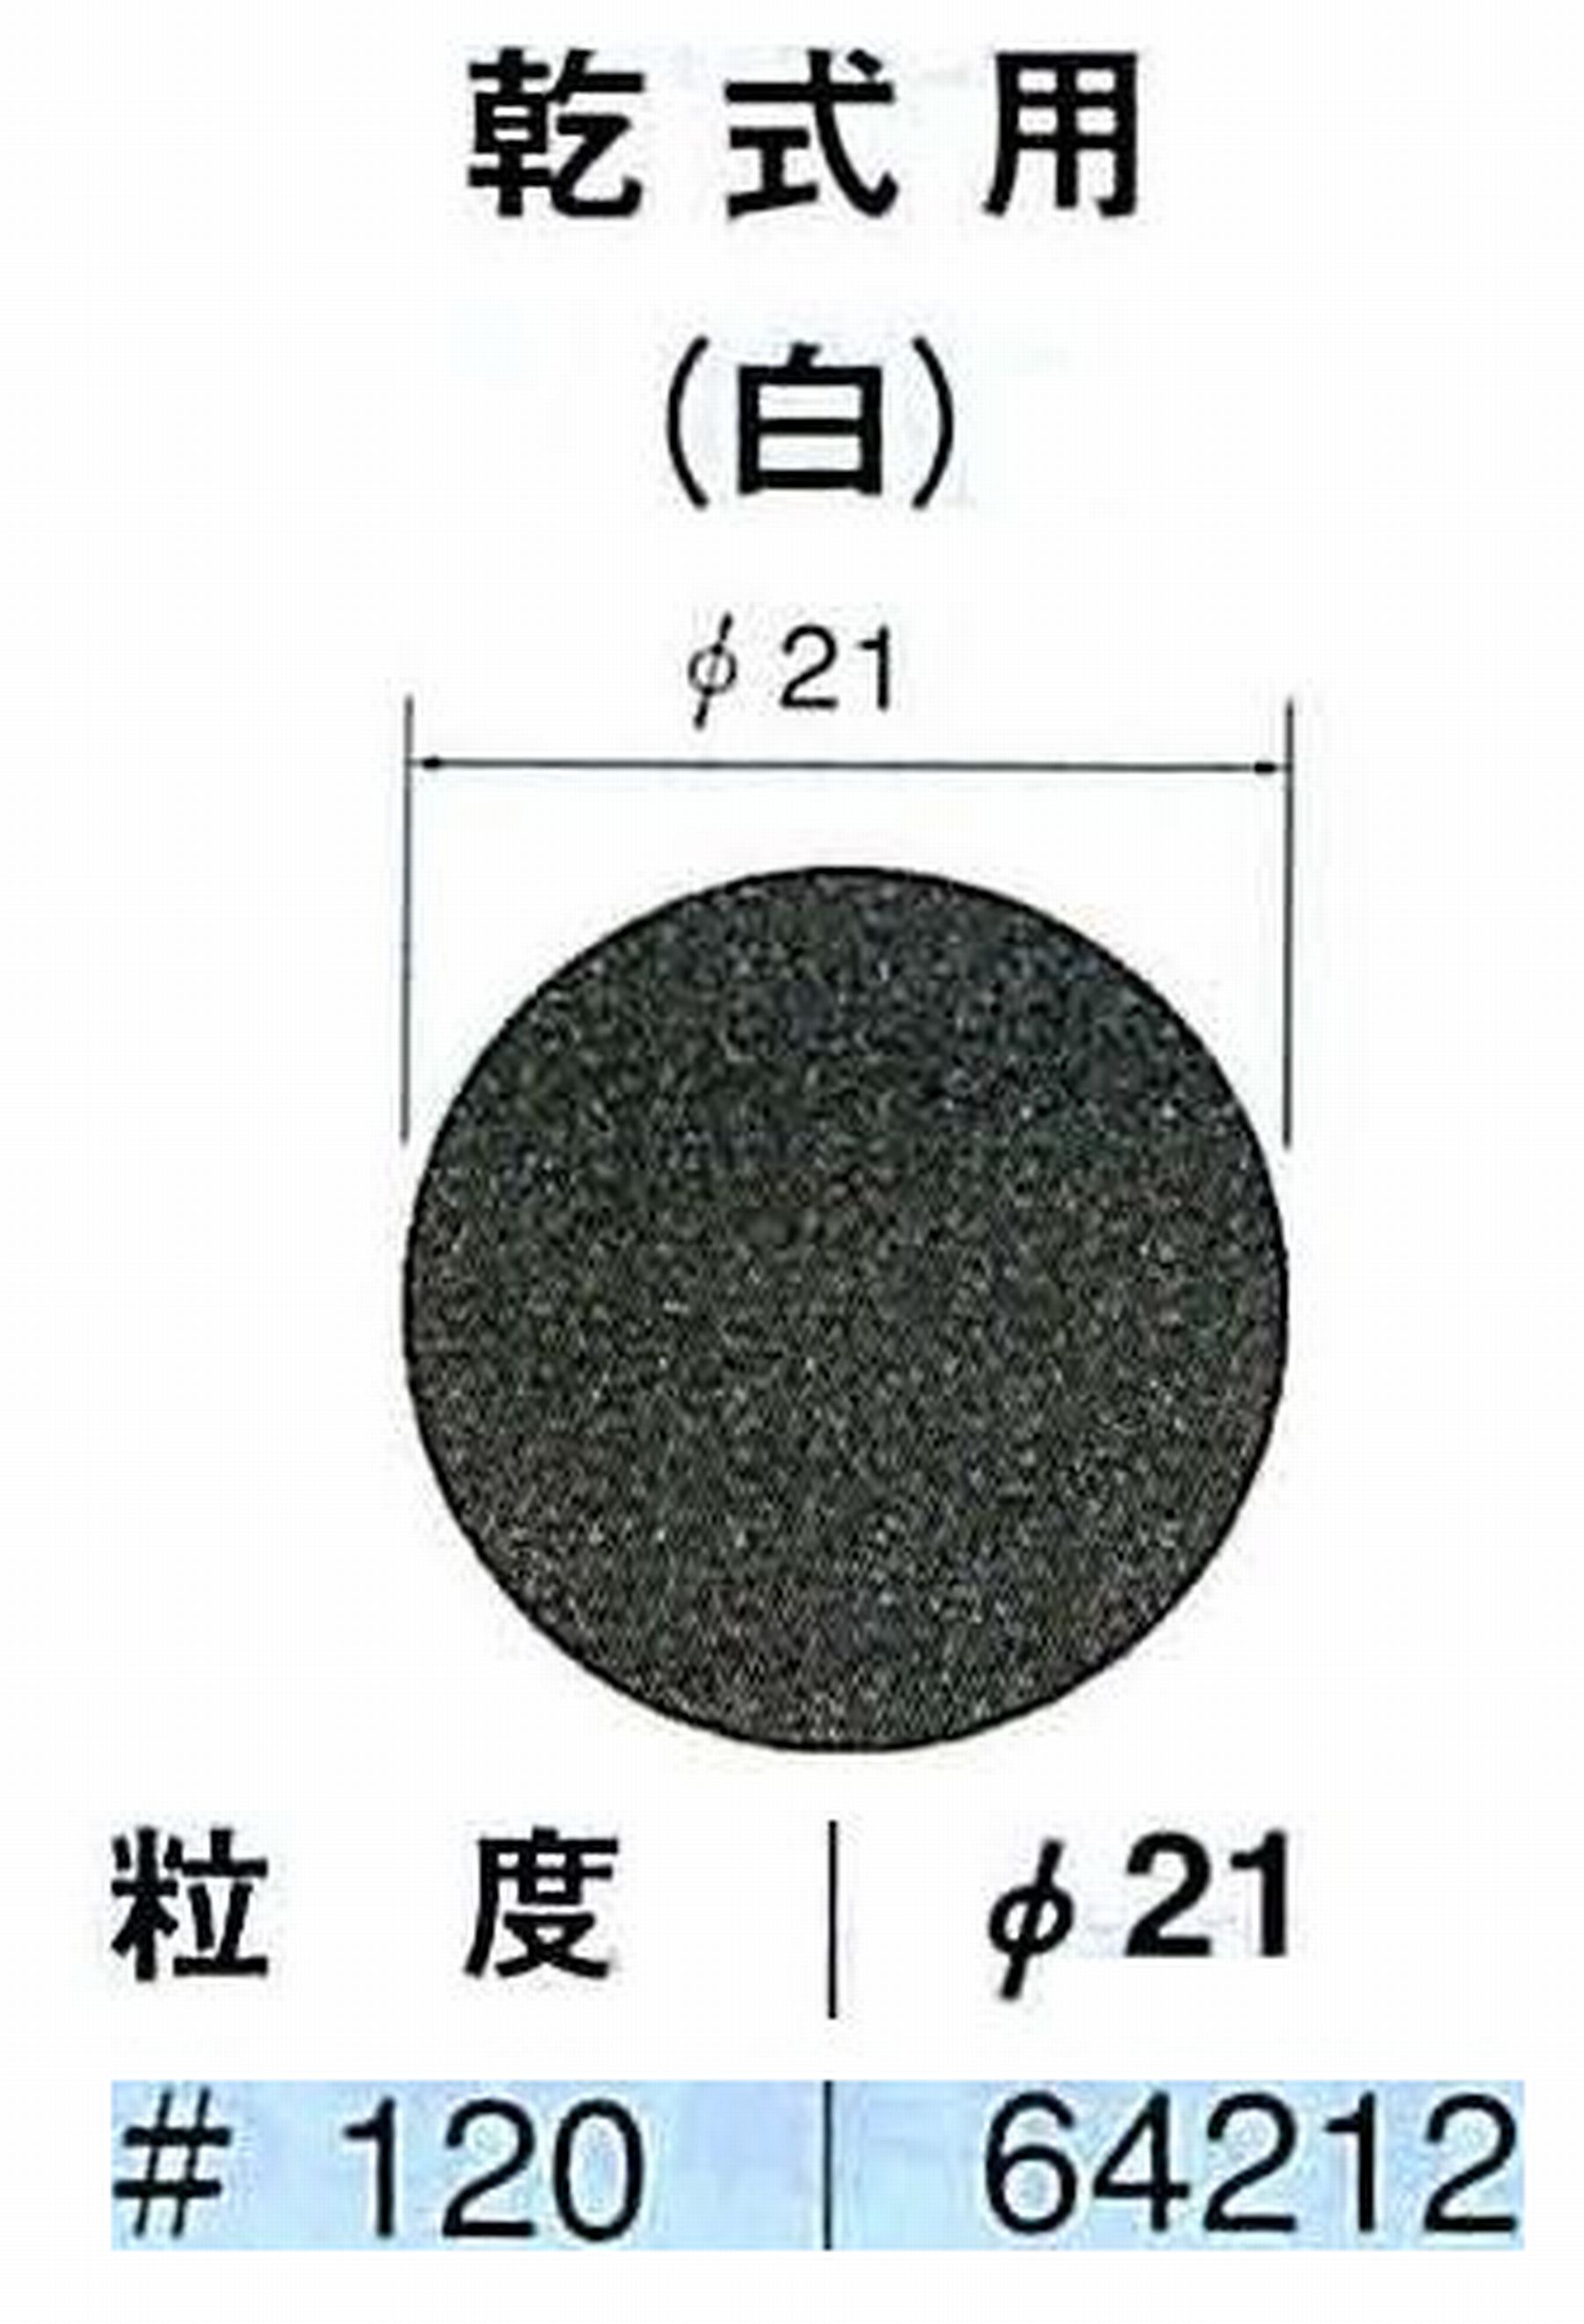 ナカニシ/NAKANISHI アングルグラインダ(電動・エアー) アングルアタッチメント専用工具 サンドペーパーディスク(紙基材タイプ)裏面のり処理 64212